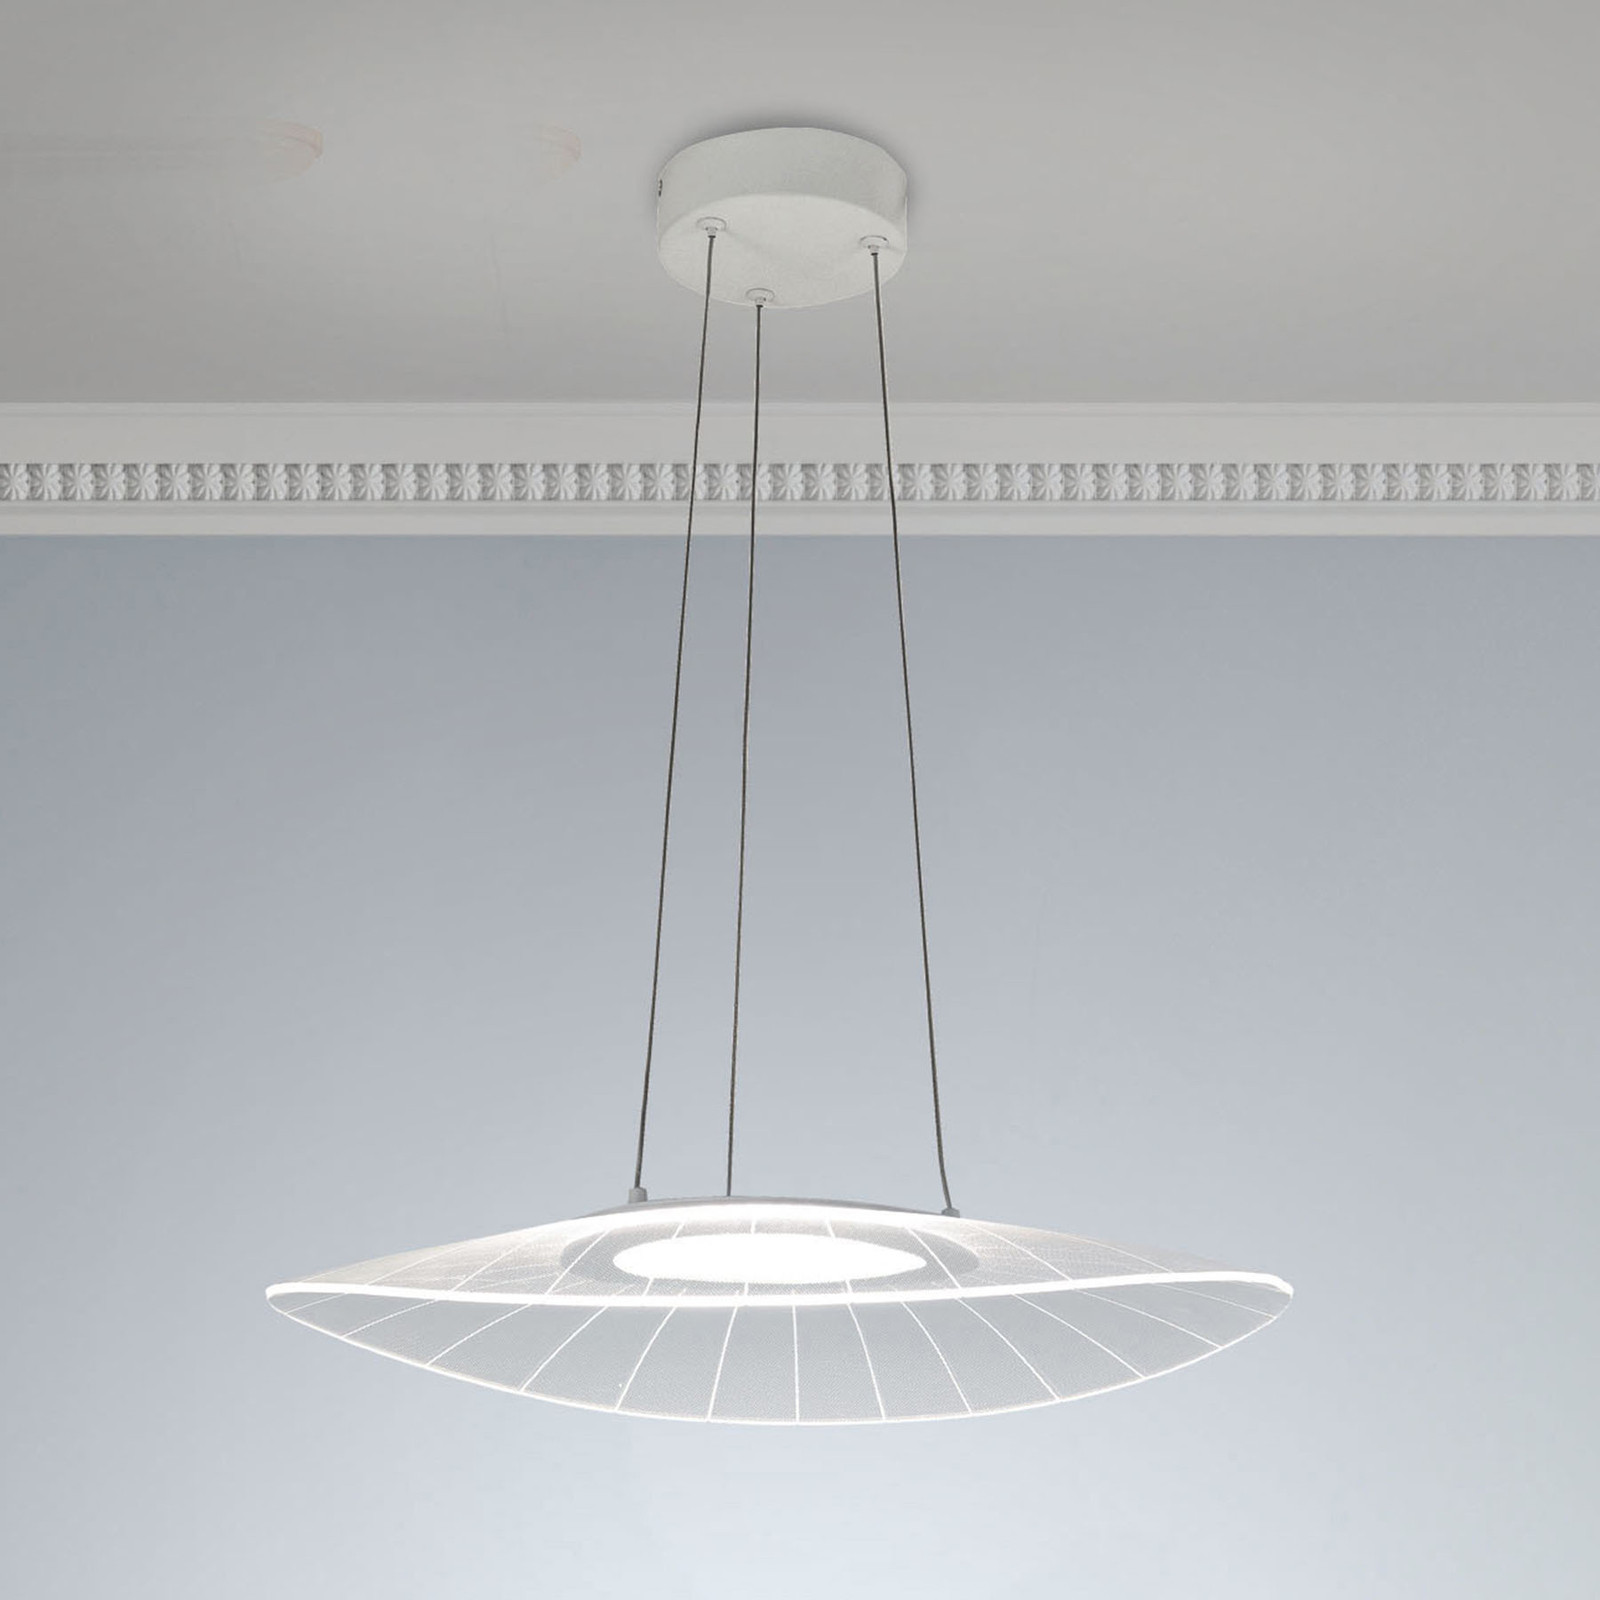 LED-es függőlámpa Vela, fehér, ovális, 59 cm x 43 cm